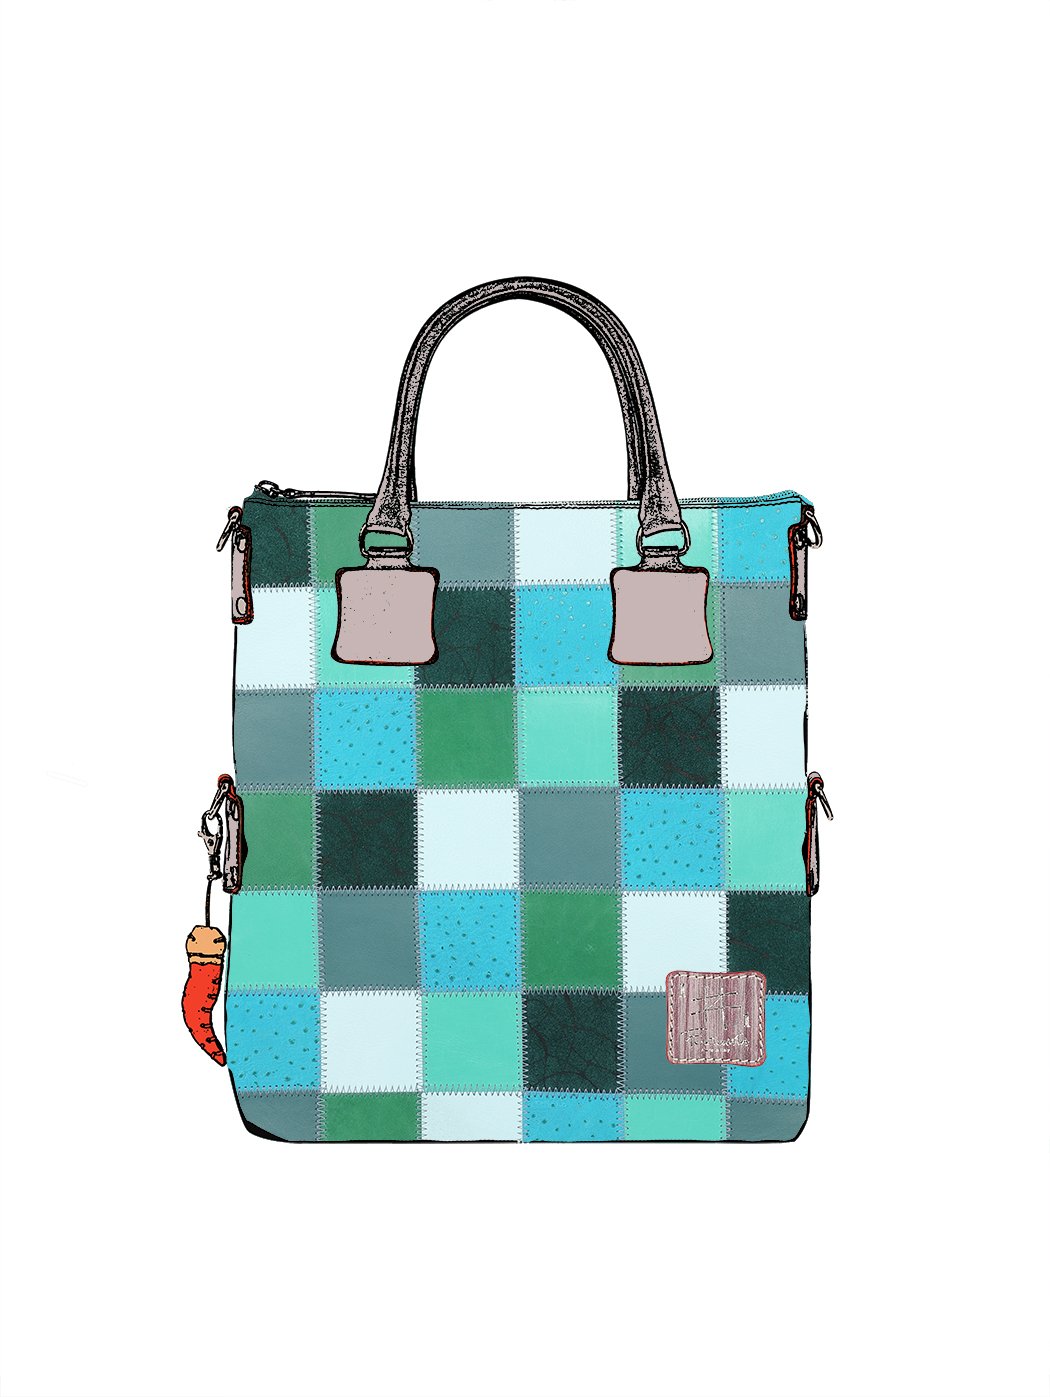 Дизайнерская сумка из коллекции Fortunata в стиле пэчворк зелено - бирюзового цвета